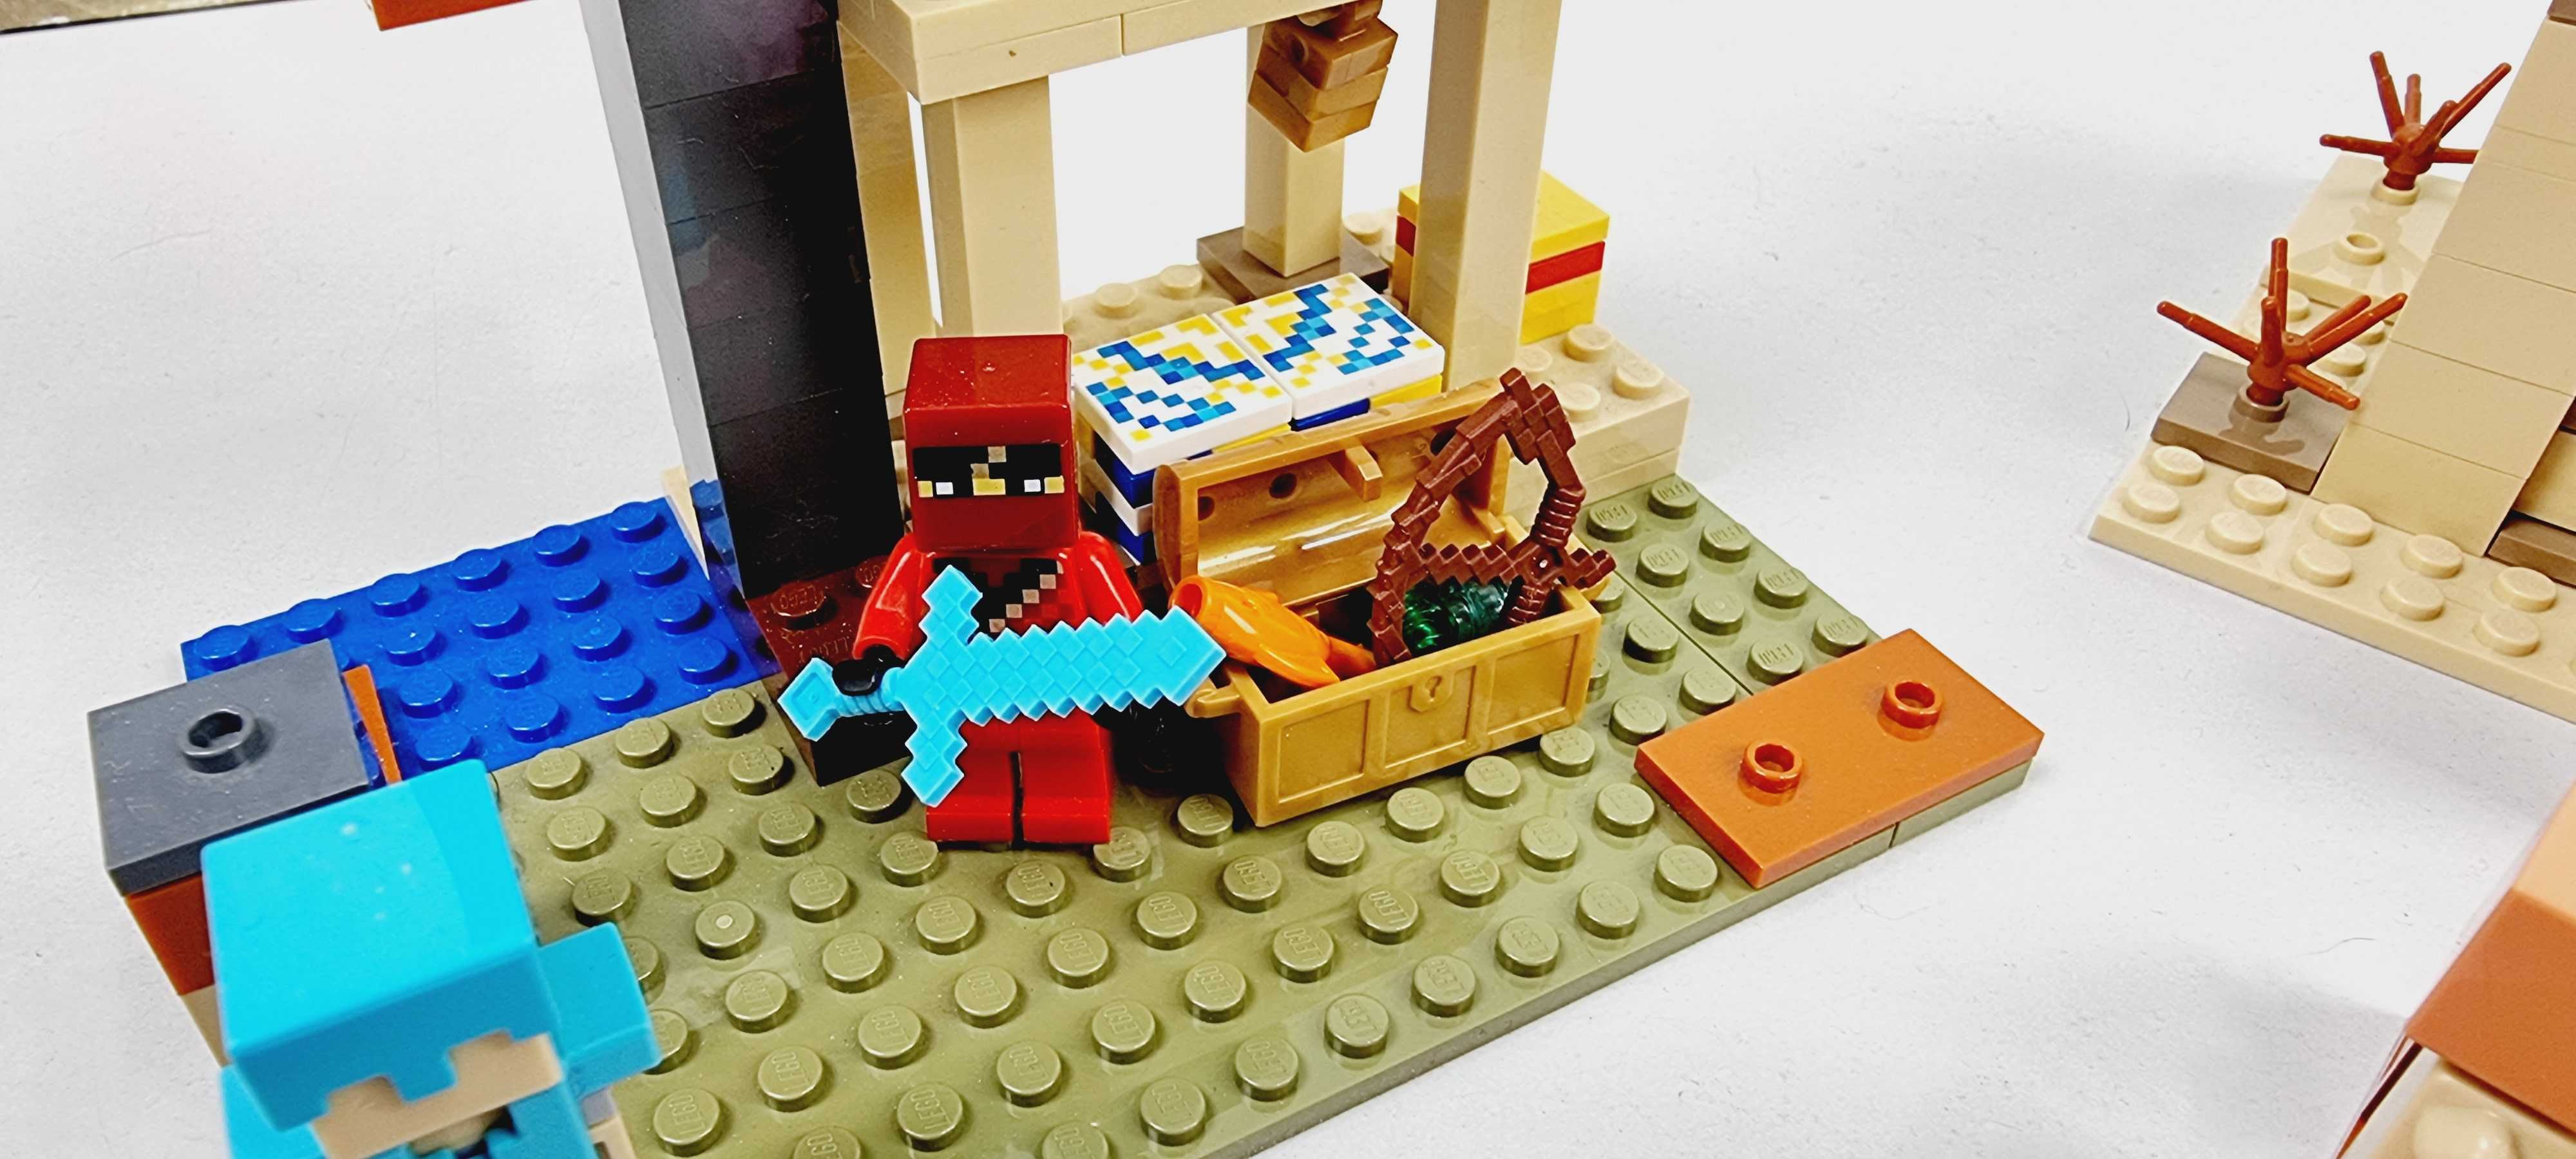 LEGO Minecraft Патруль разбойников - Конструктор ЛЕГО Майнкрафт 21160